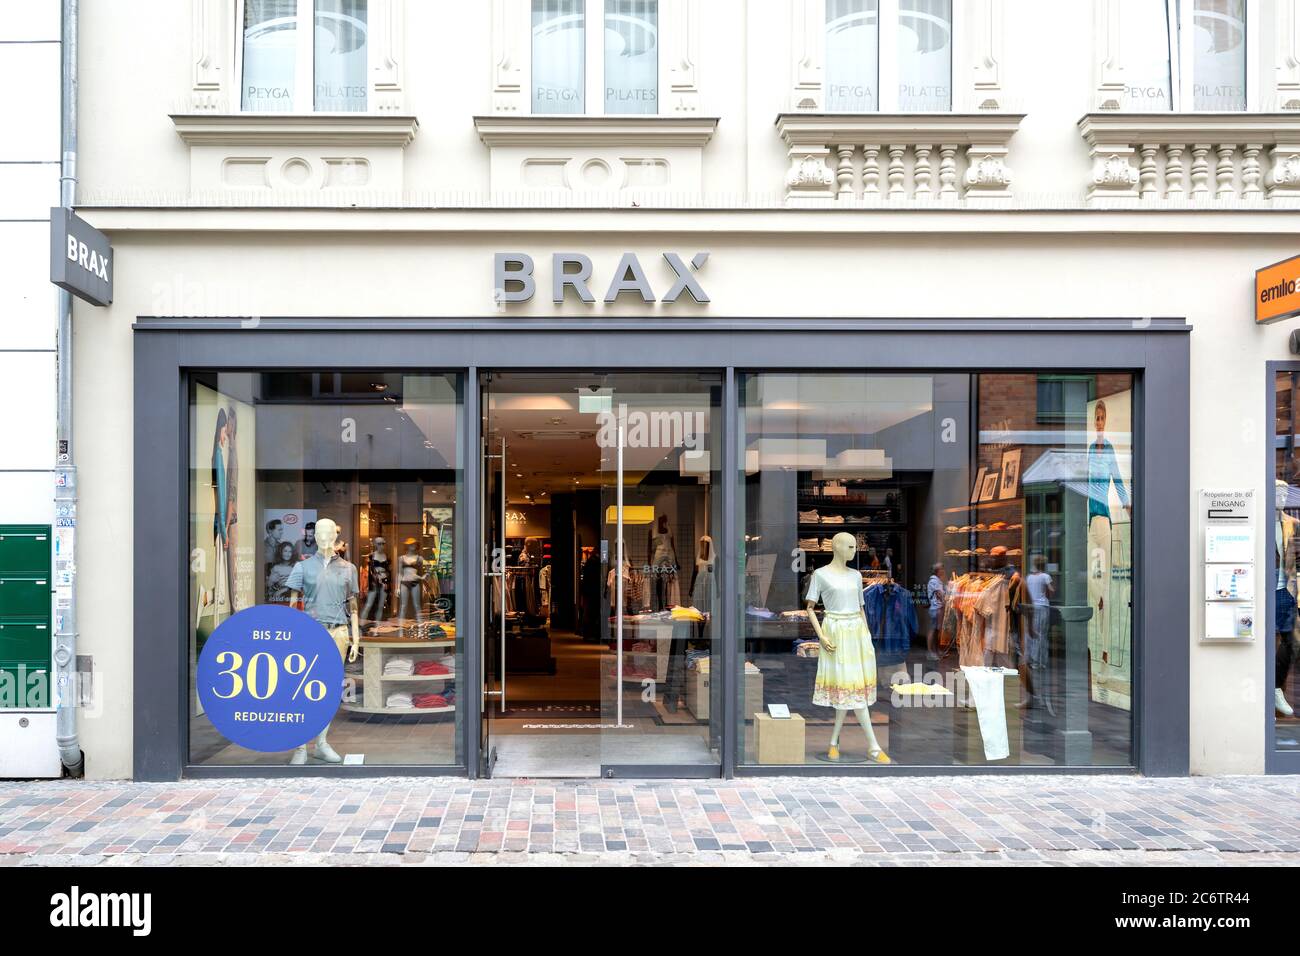 BRAX branch in Rostock, Germany Stock Photo - Alamy